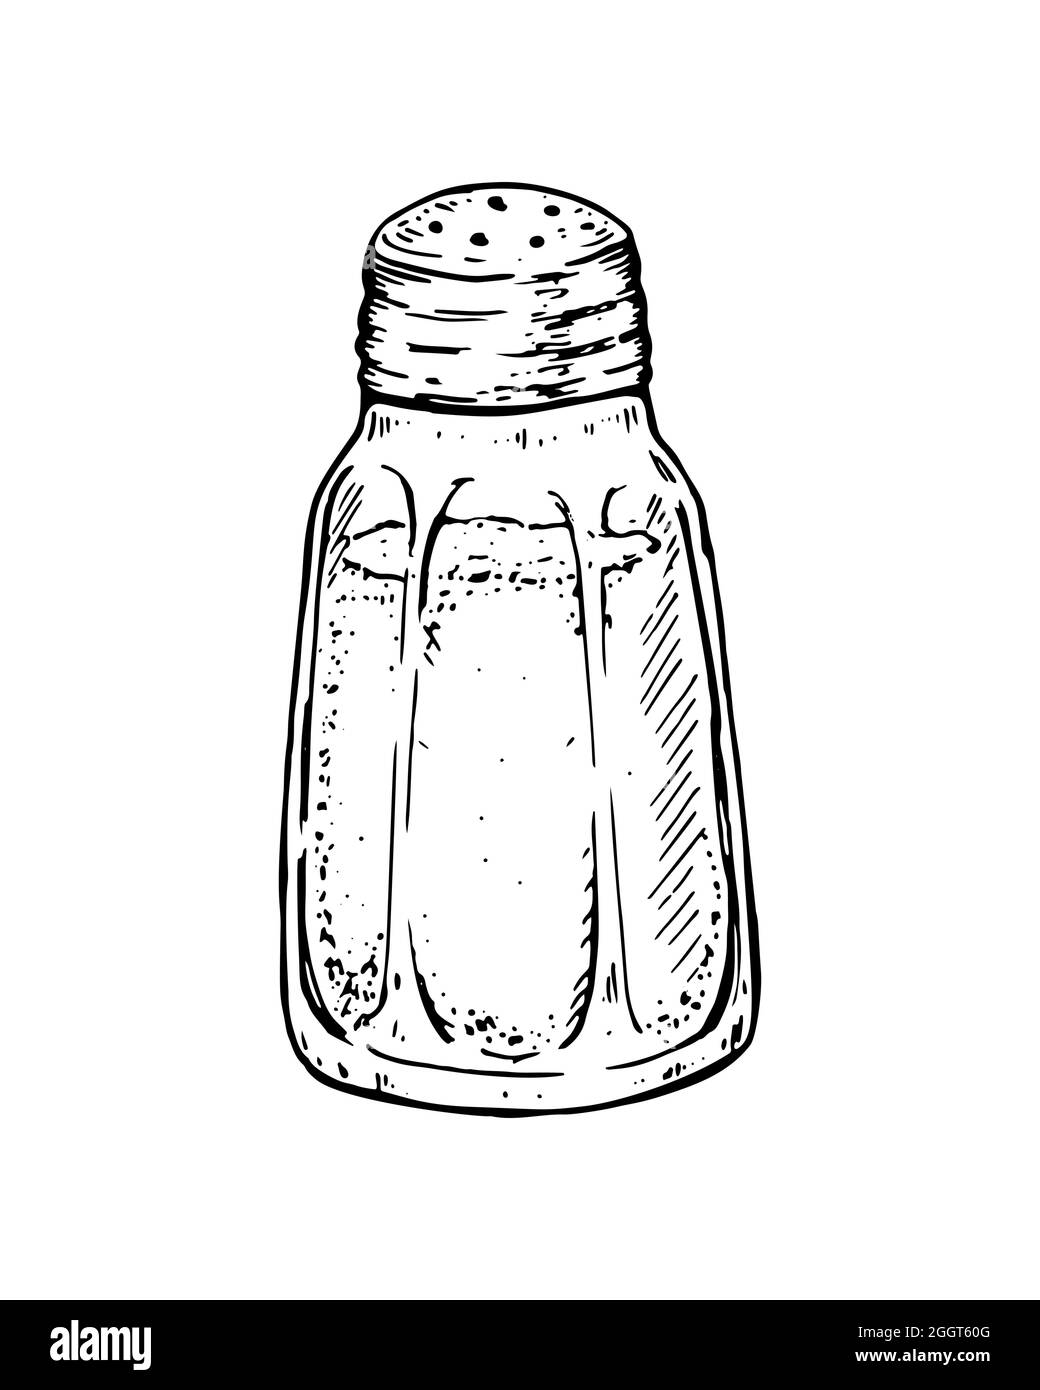 Von Hand gezogenes Salz in einem Salzstreuer. Vektorgrafik im Skizzenstil Stock Vektor